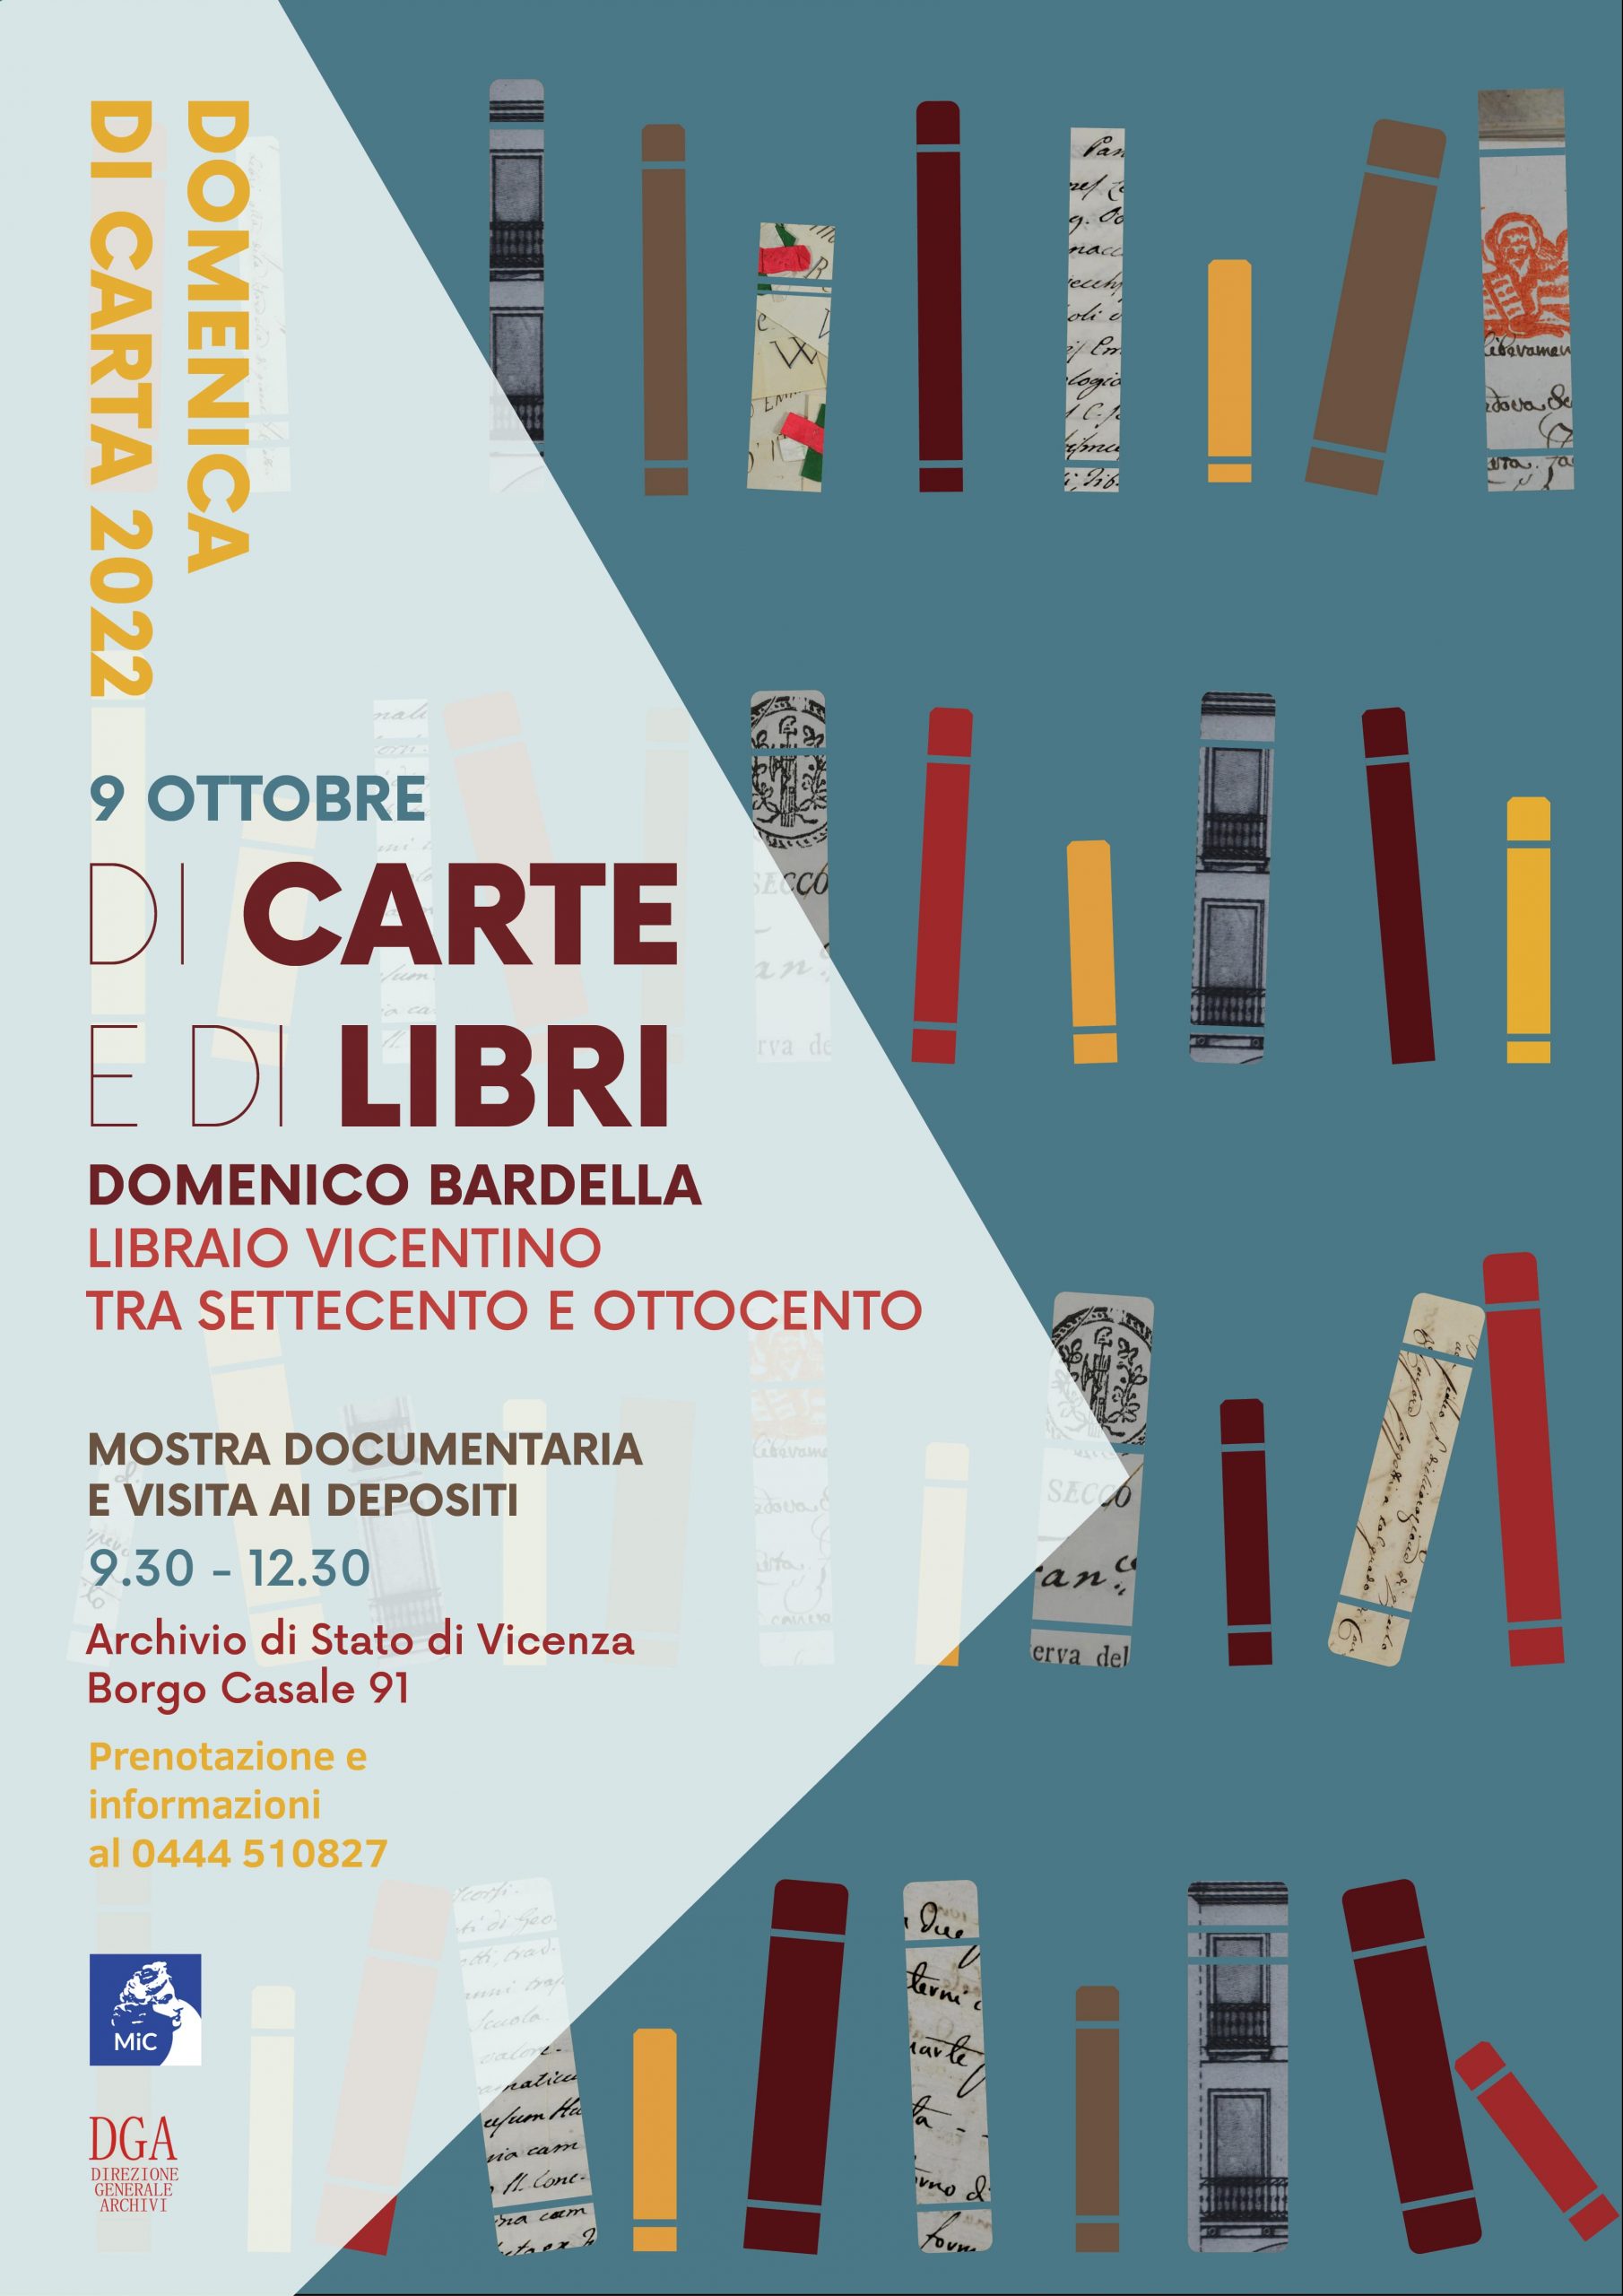 Poster Domenica di Carta 2022 - Di carte e di libri - Domenico Bardella libraio vicentino tra Settecento e Ottocento